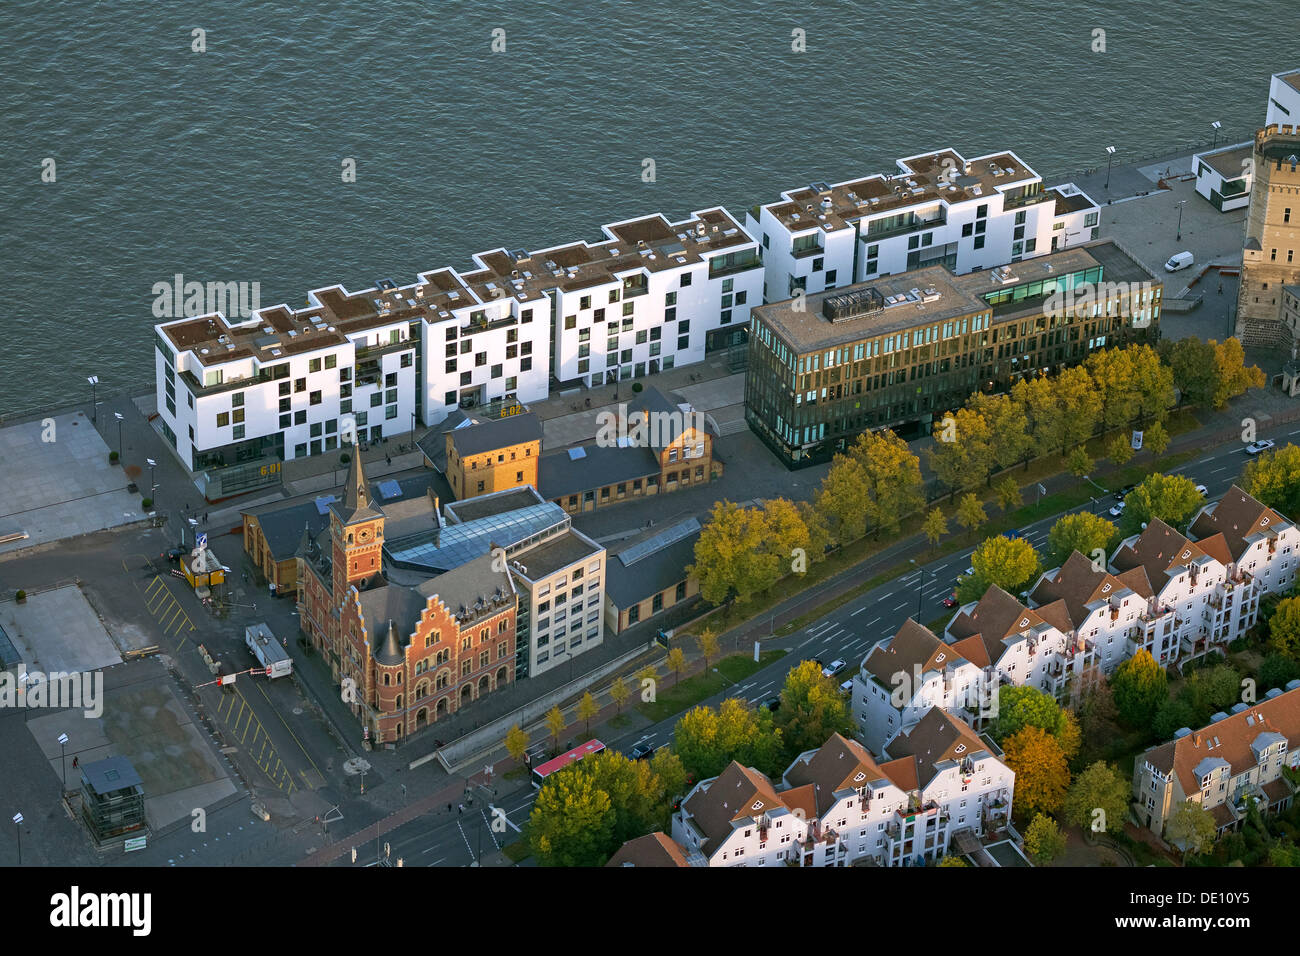 Vue aérienne, Rheinauhafen salon, un projet de régénération urbaine Banque D'Images